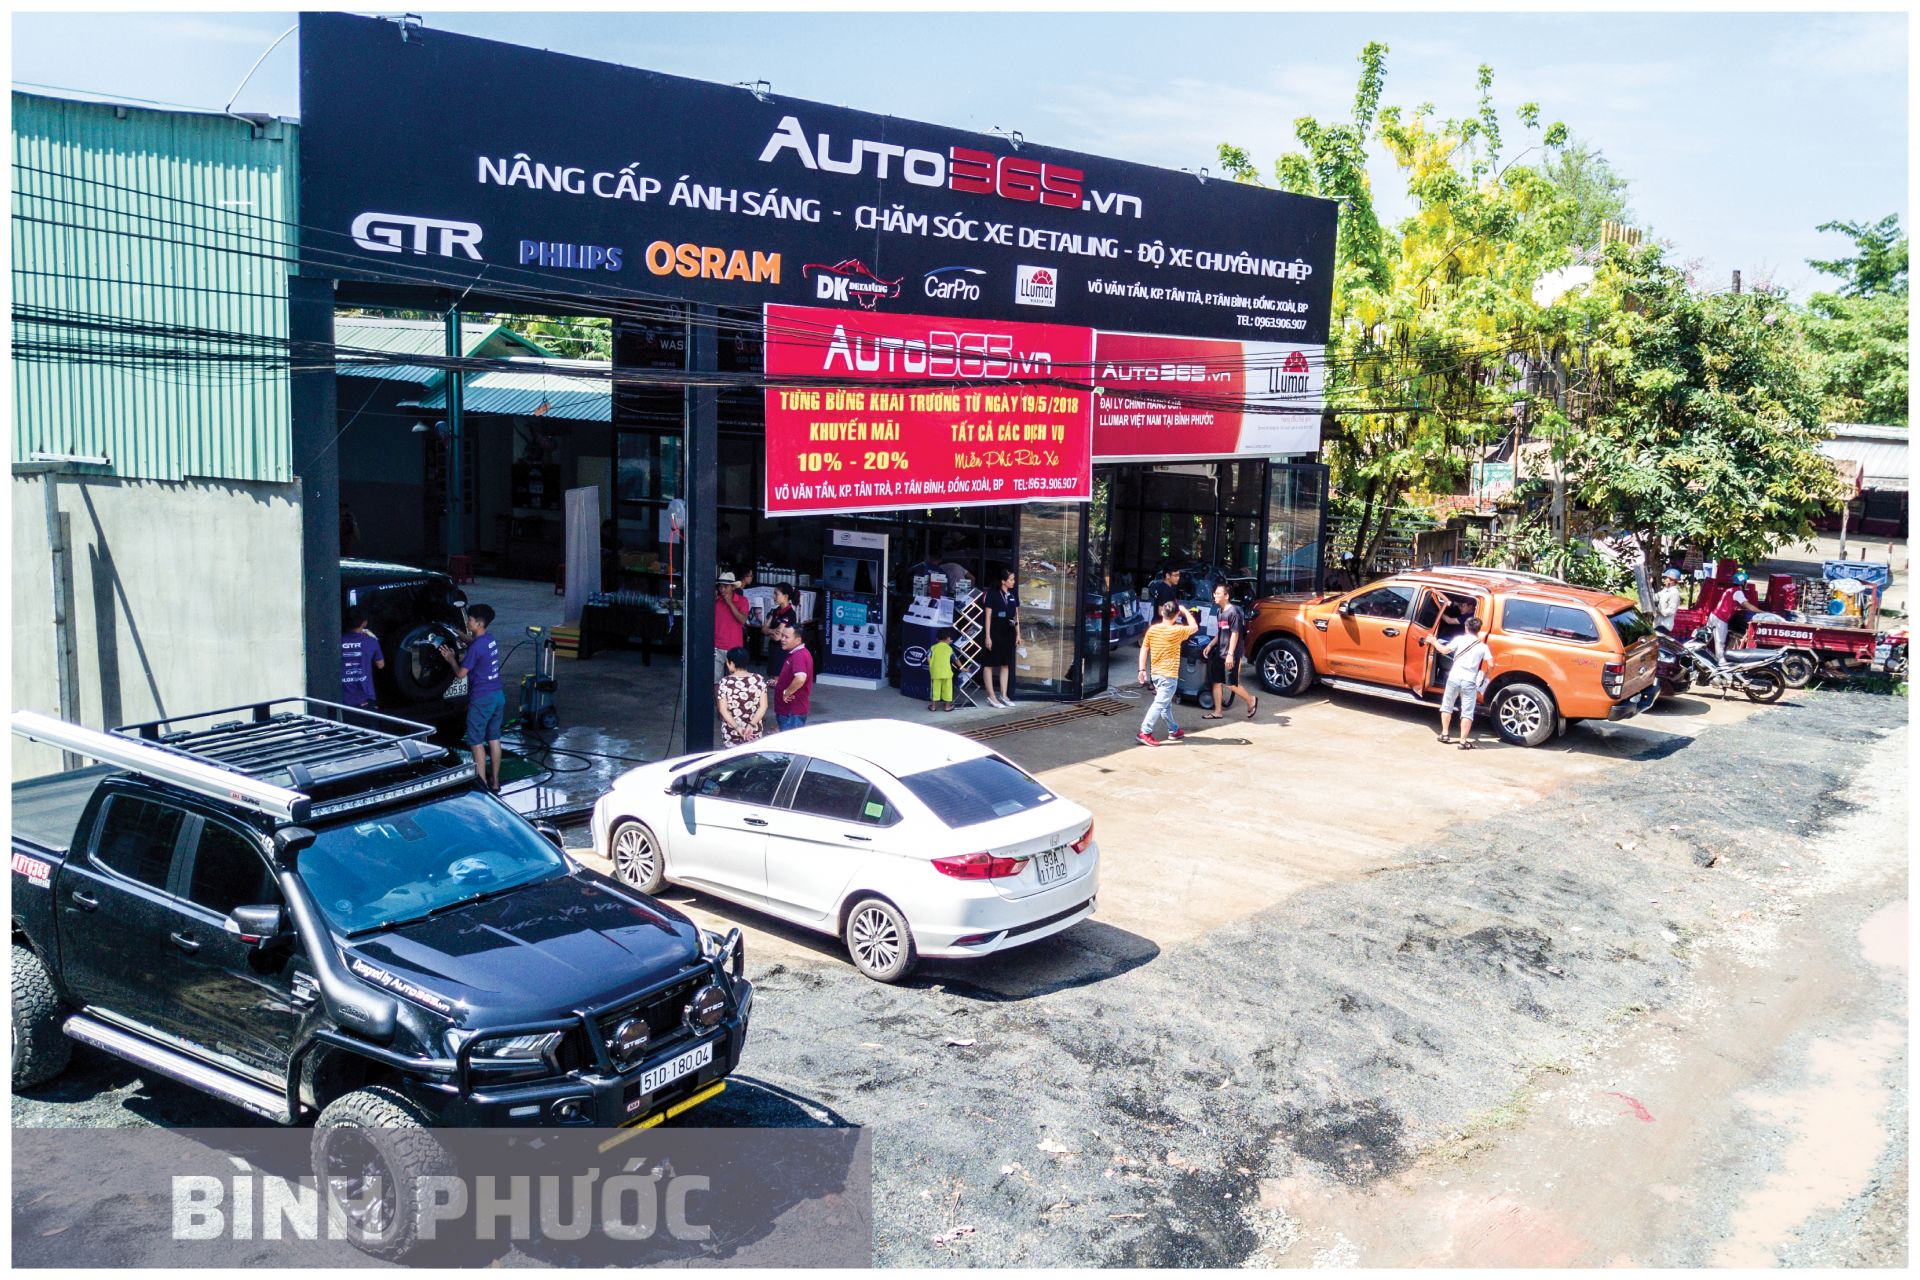 Auto365 Bình Phước – Đại Lý Gtr Việt Nam Tại Bình Phước